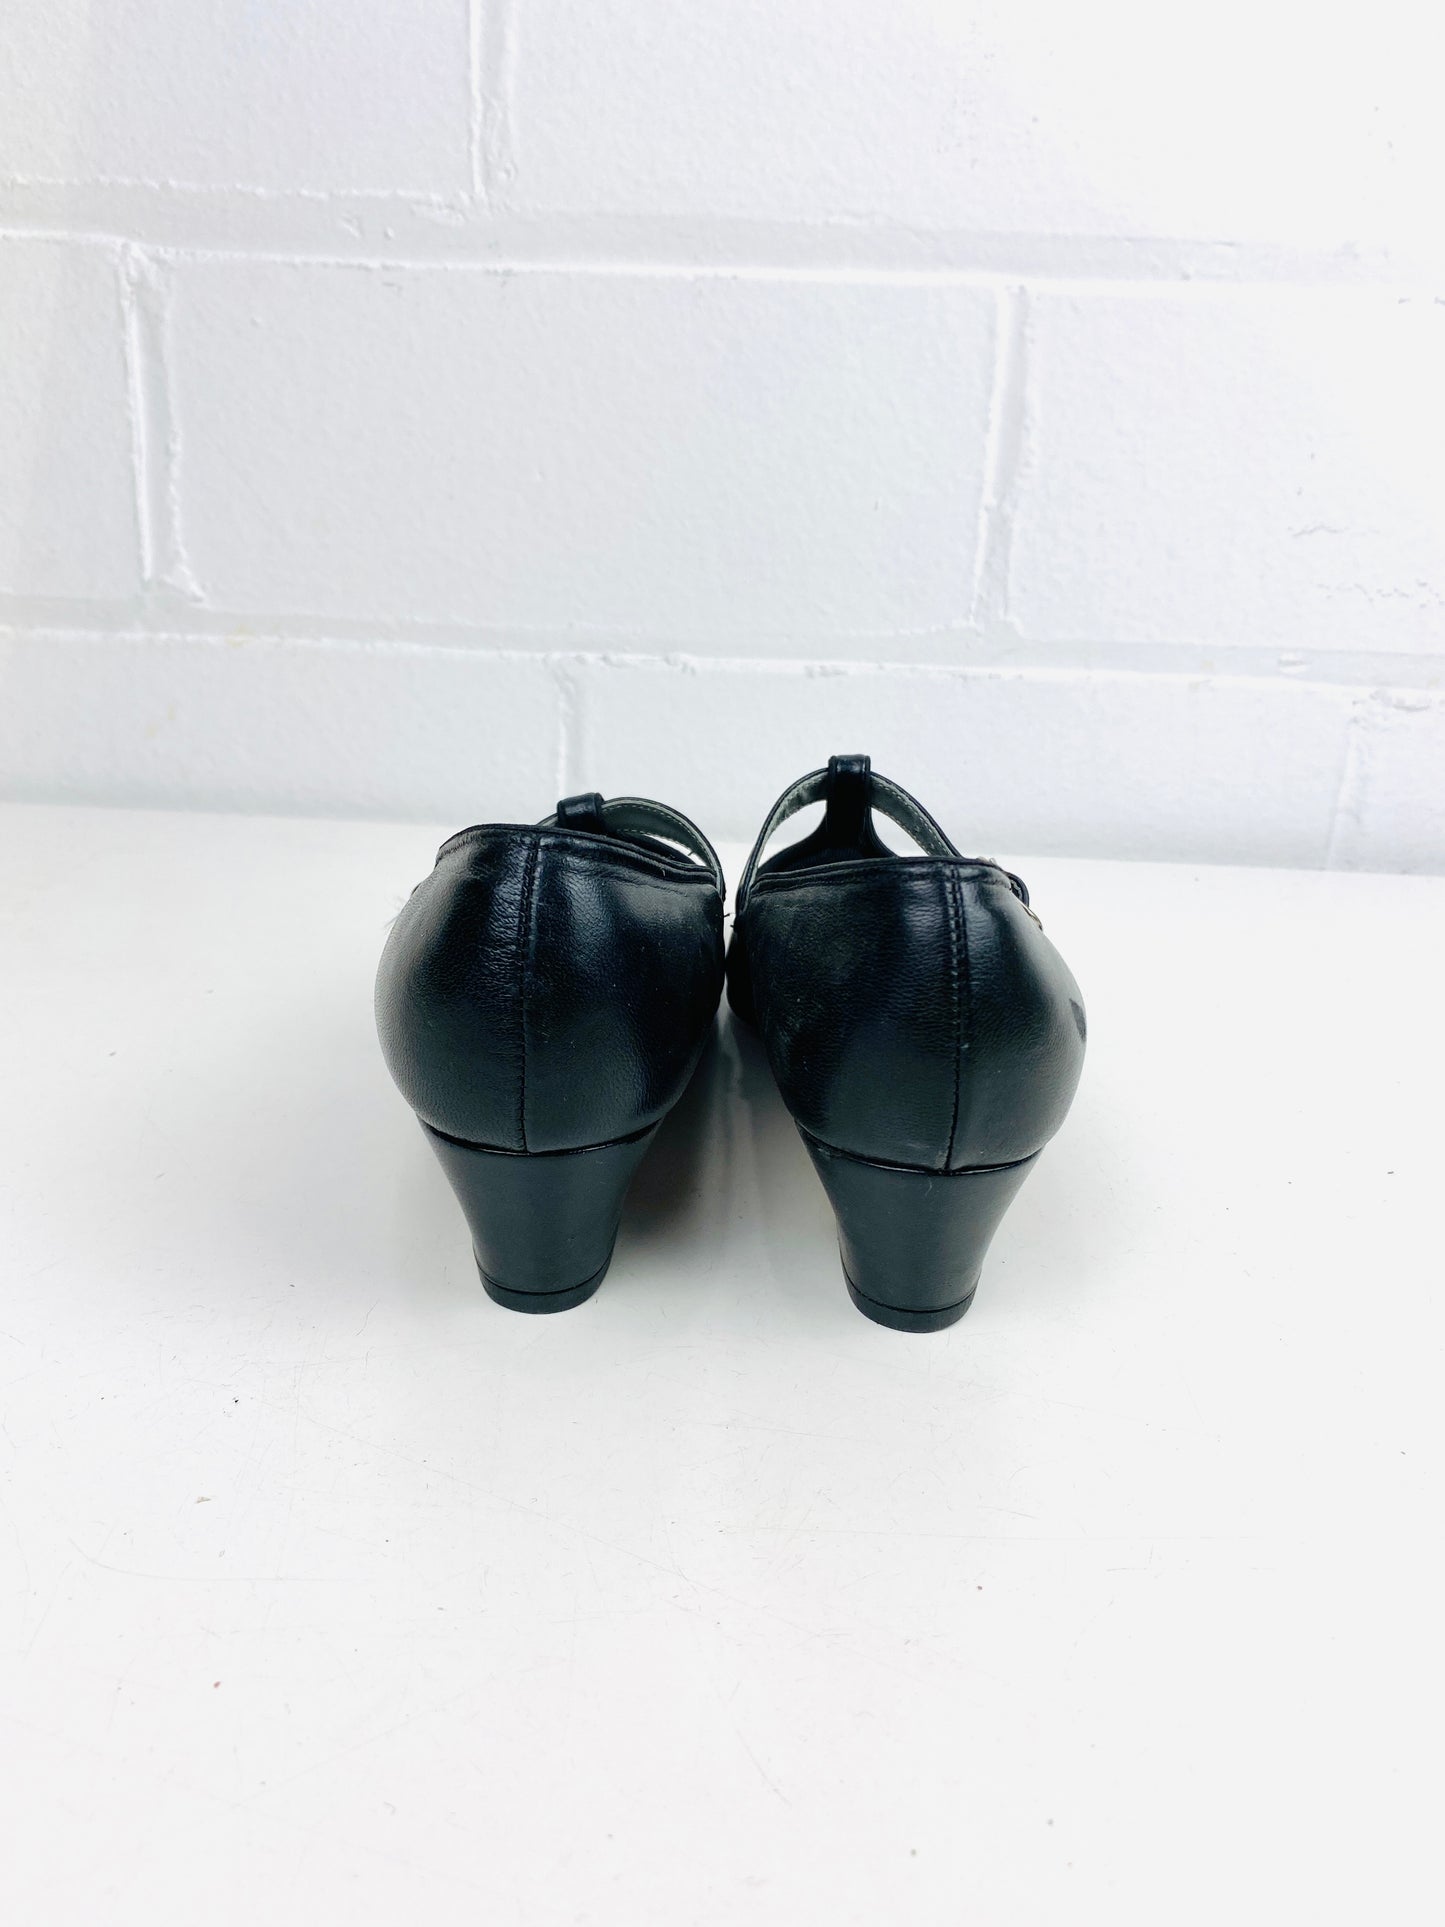 Vintage Deadstock Shoes, Women's 1980s Black Leather Cuban Heel T-Strap Pump's, NOS